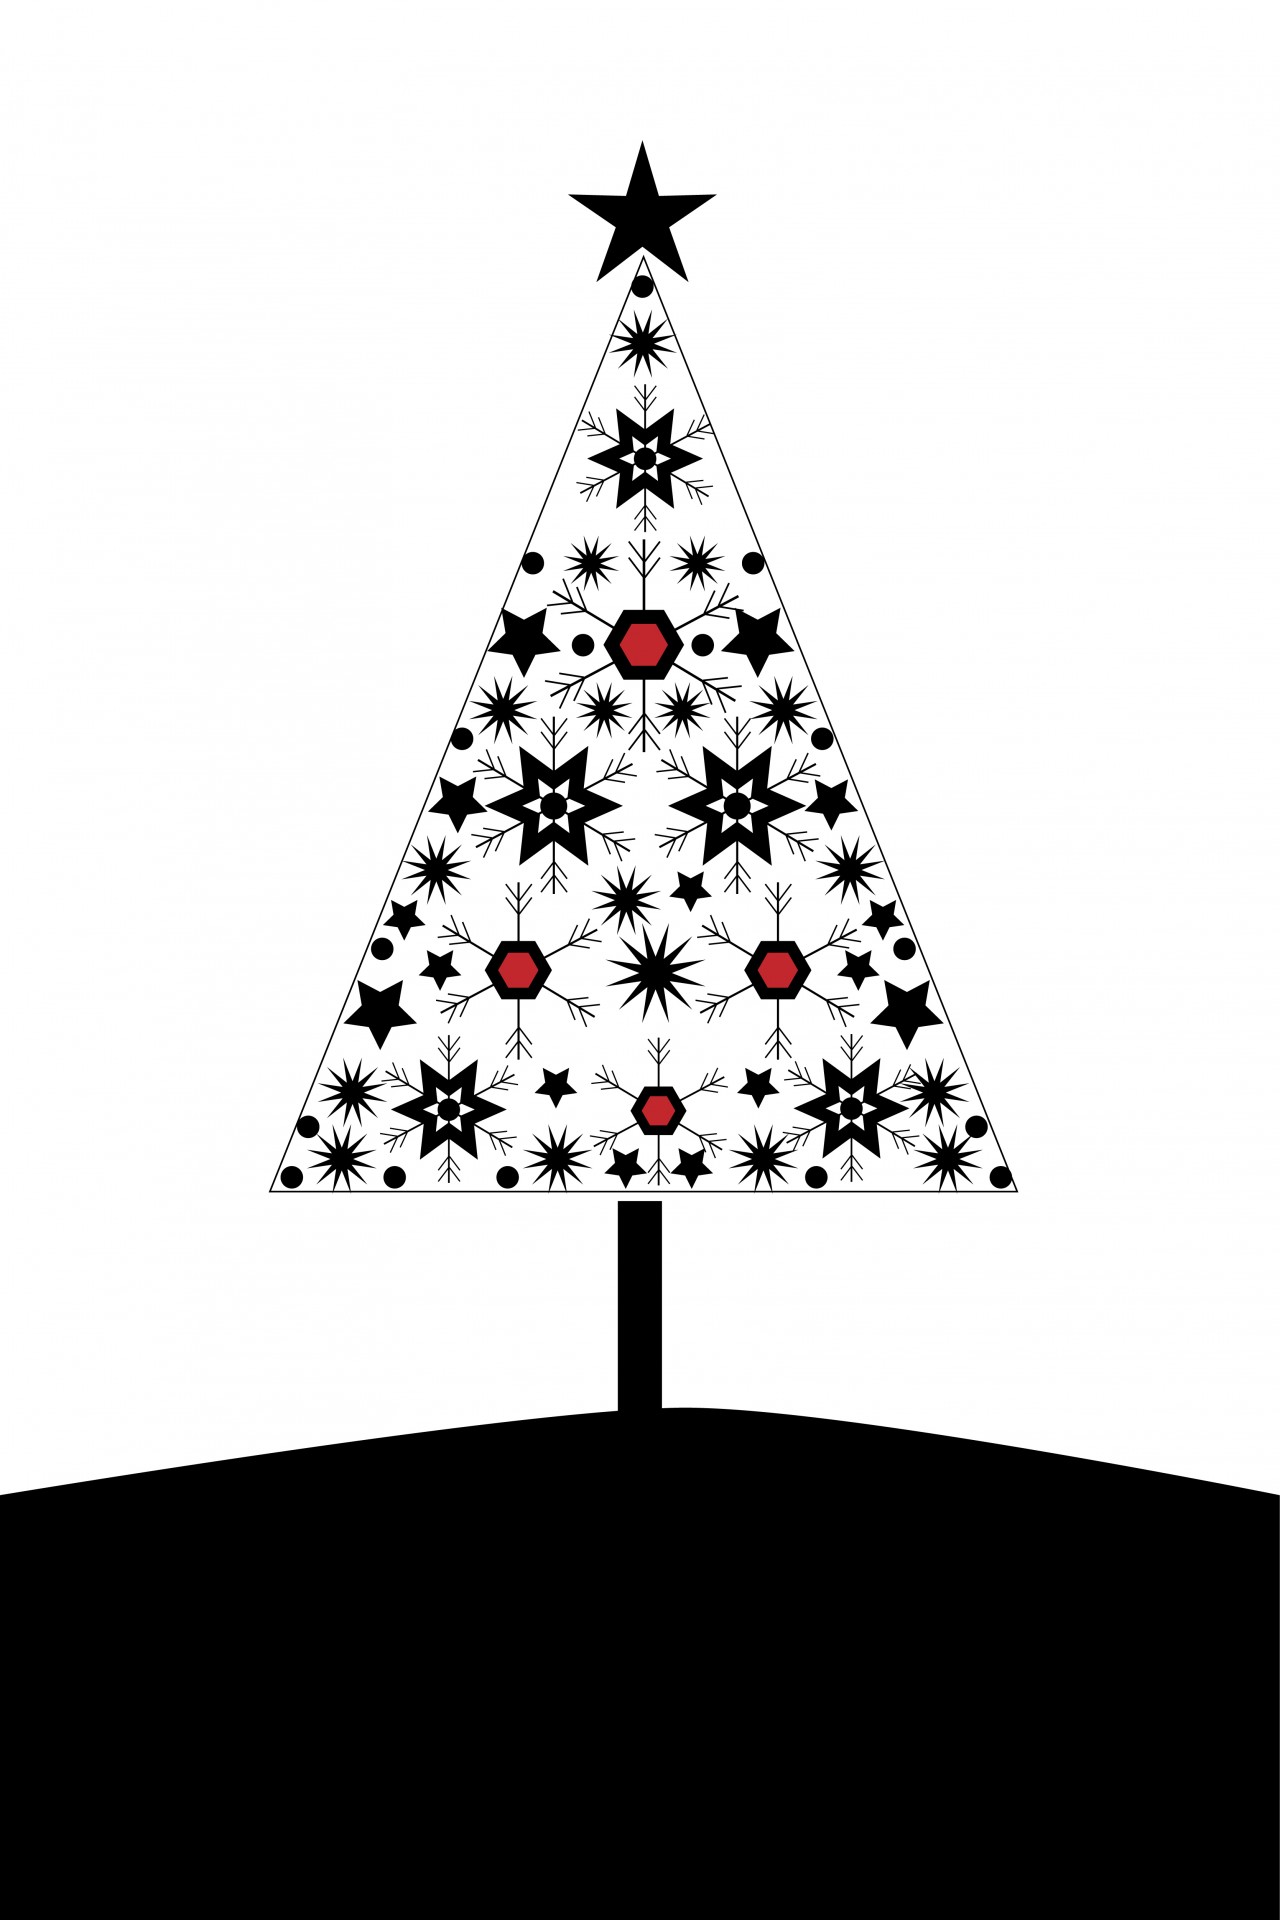 Weihnachtsbaum-Karte Moderne Kostenloses Stock Bild - Public Domain